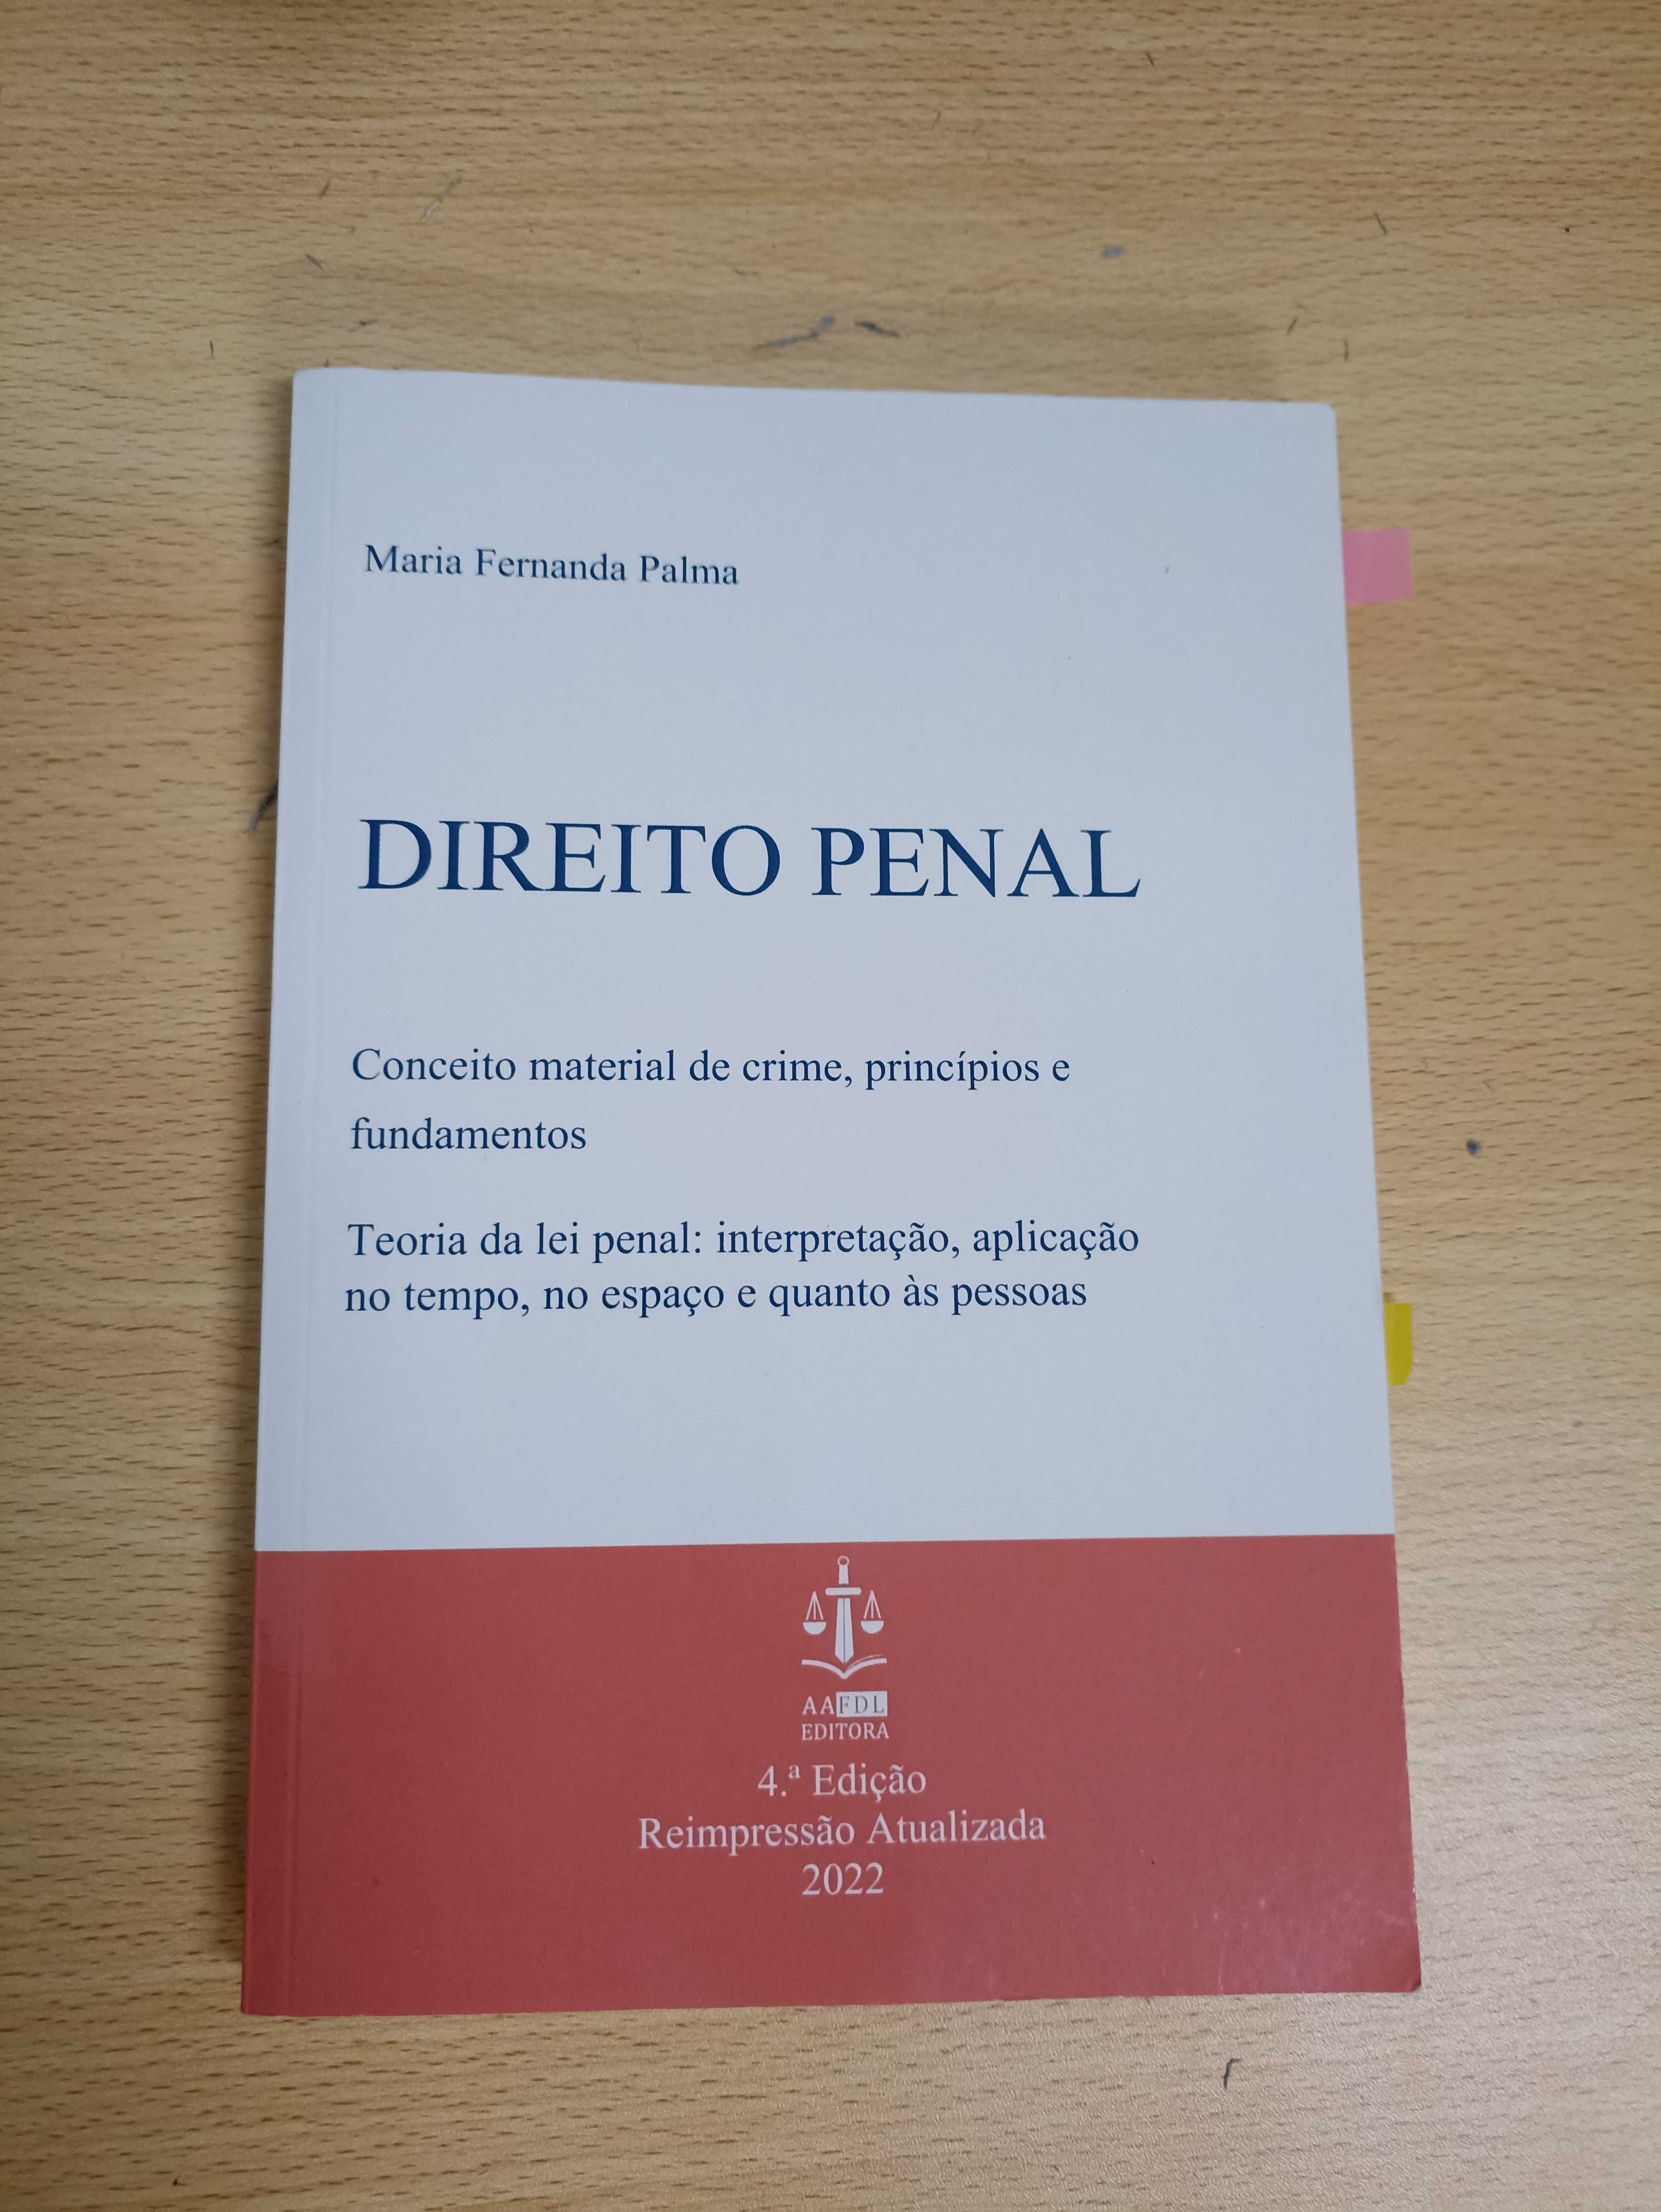 "Direito Penal: Conceito material de crime, princípios e fundamentos"